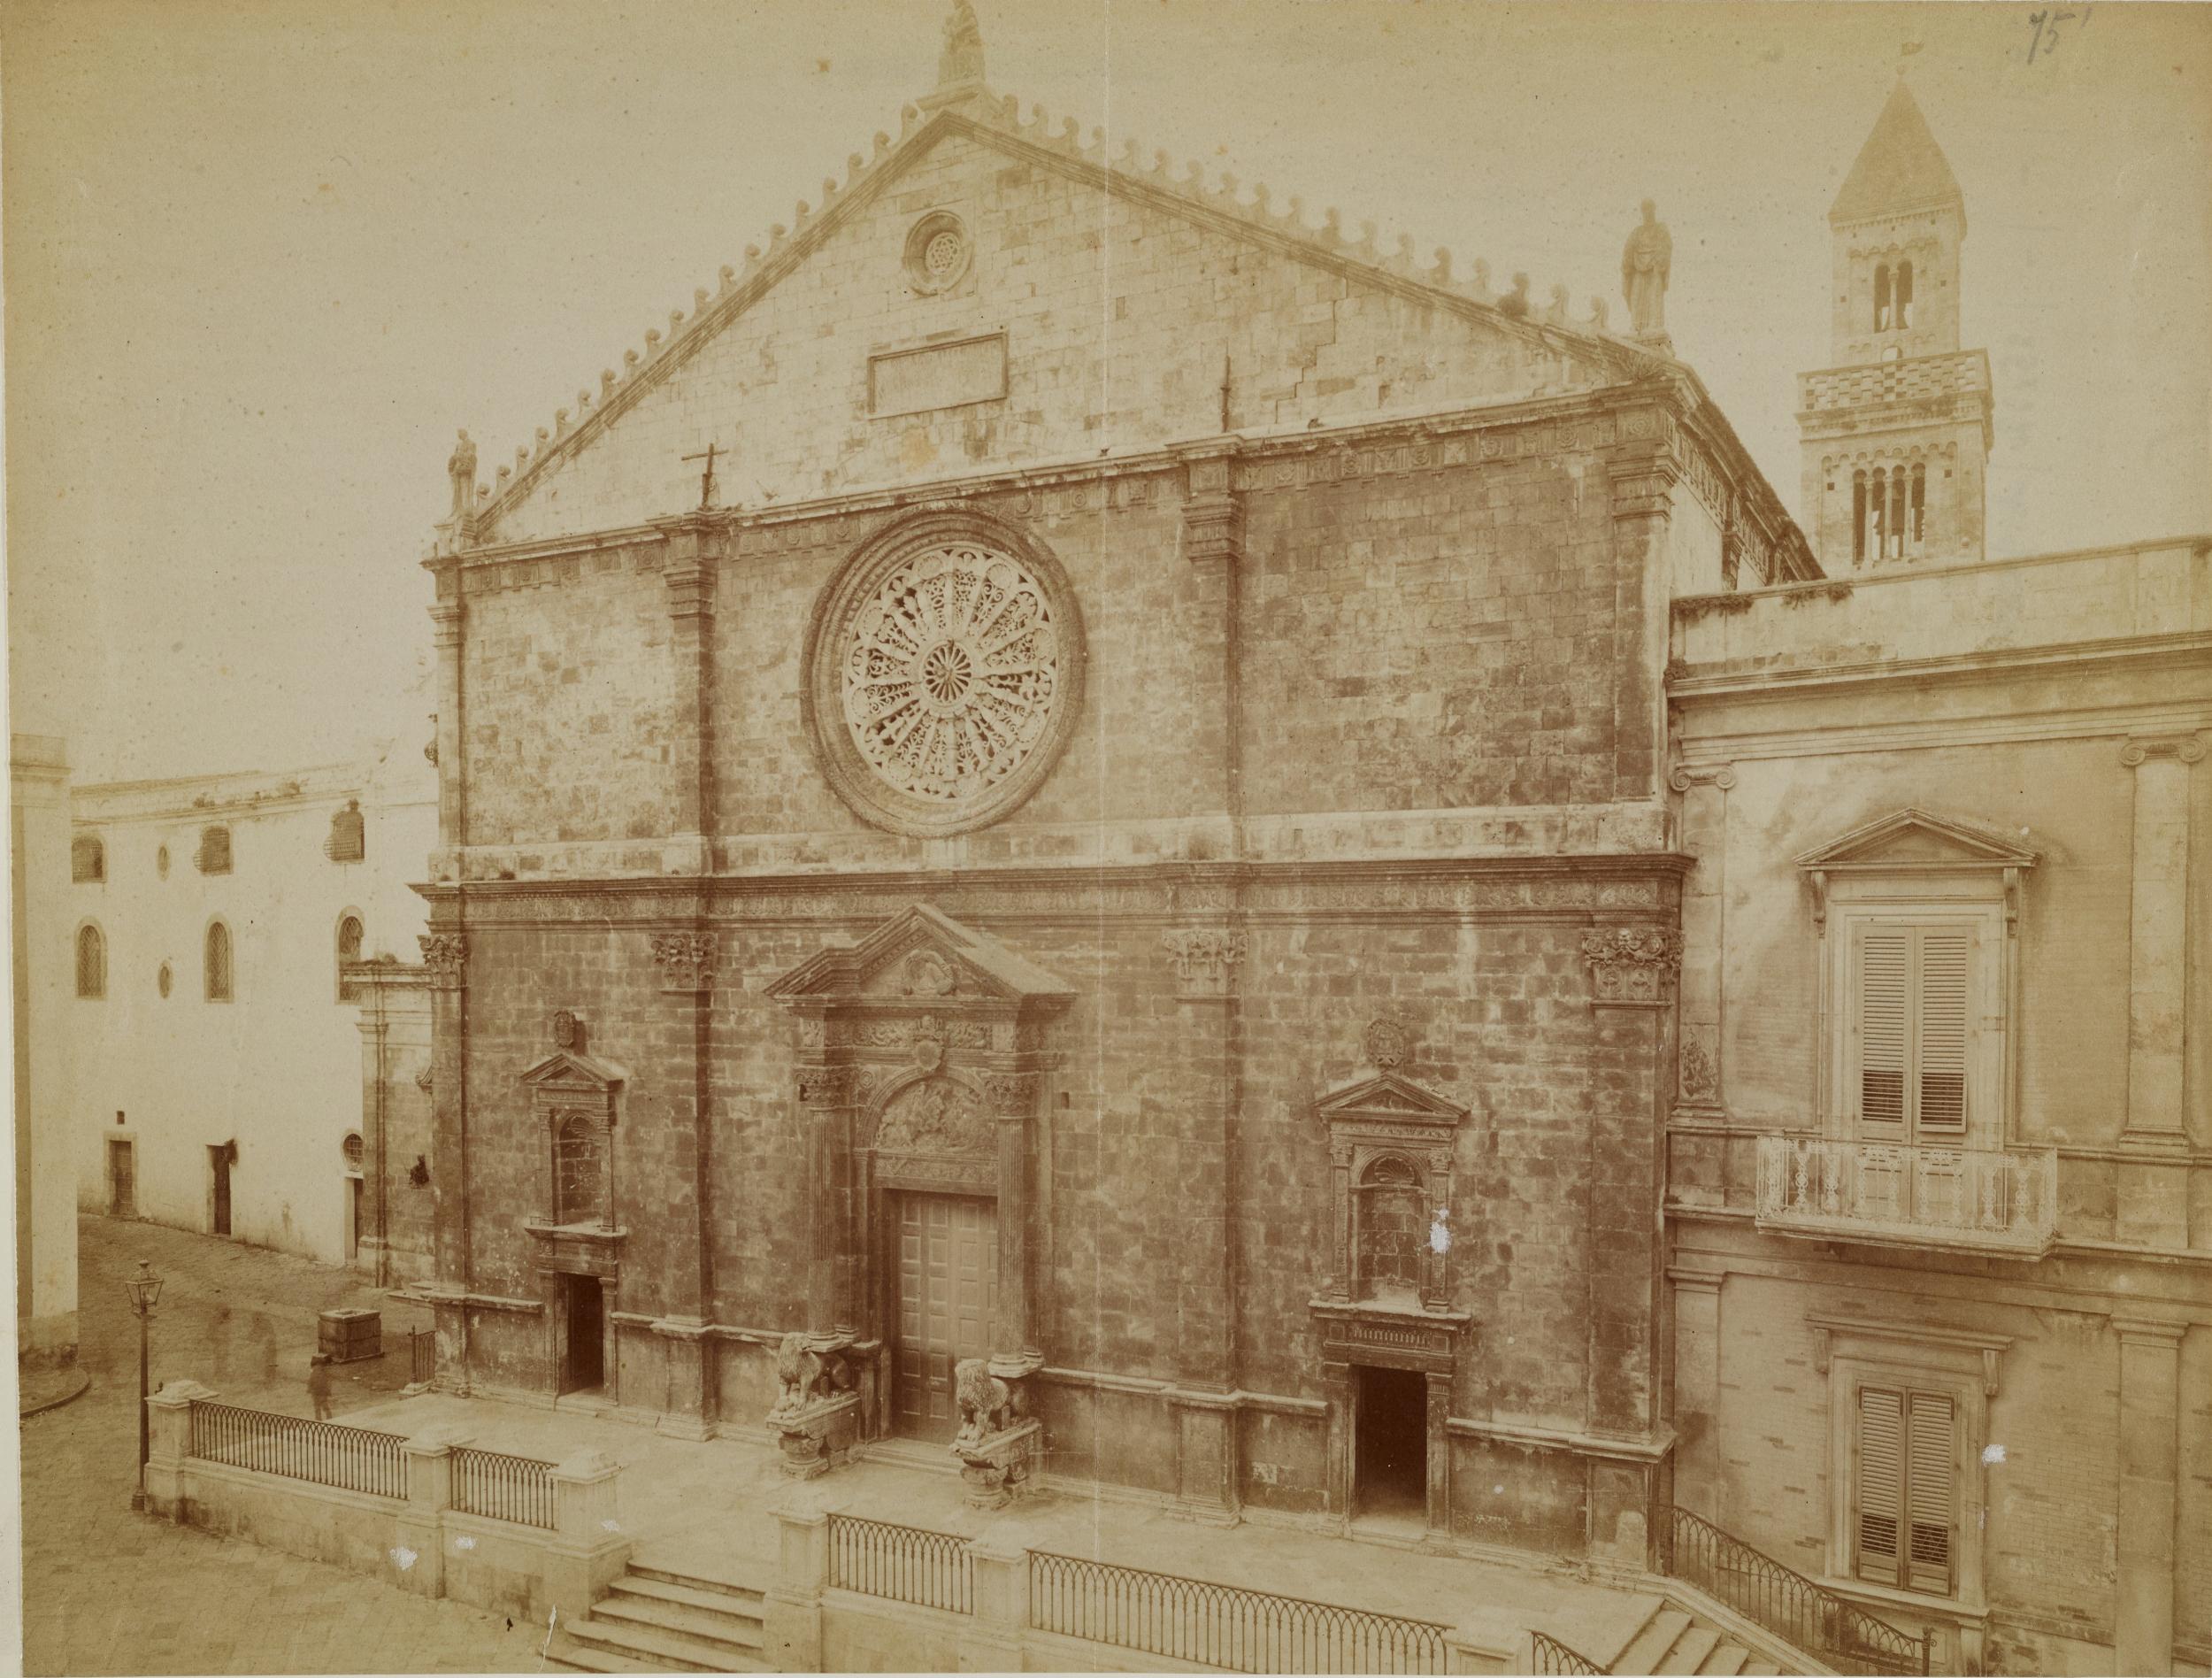 Fotografo non identificato, Acquaviva delle Fonti - Cattedrale, facciata, 1876-1900, albumina/carta, MPI130126